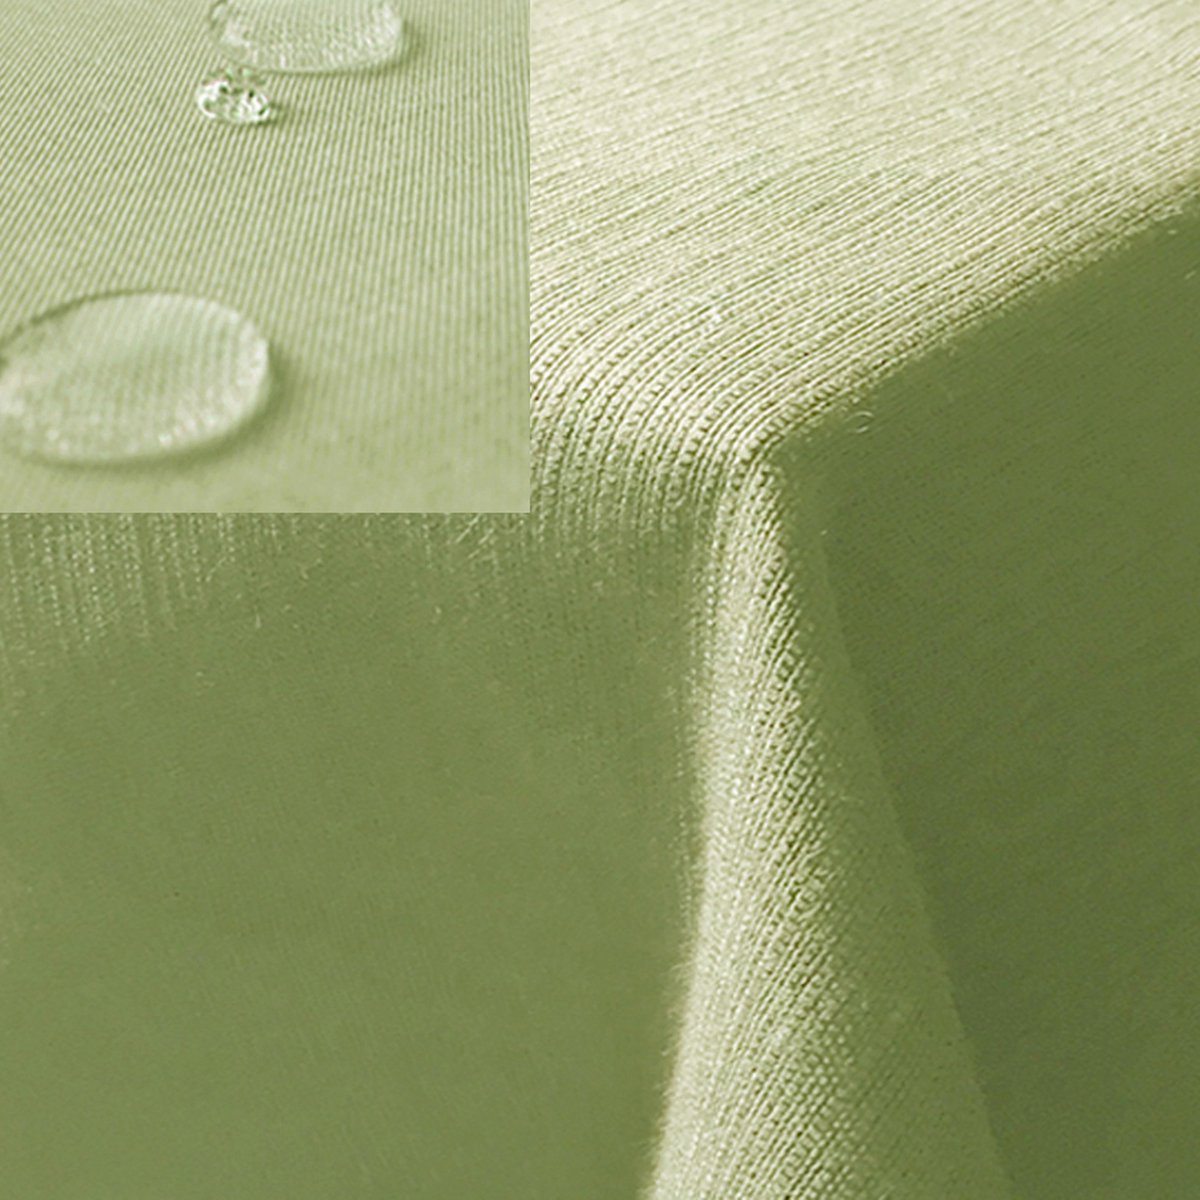 JEMIDI stoffen tafelkleed 135 x 180 cm - Voor binnen of buiten - Waterafstotend en vlekbestendig - In lichtgroen